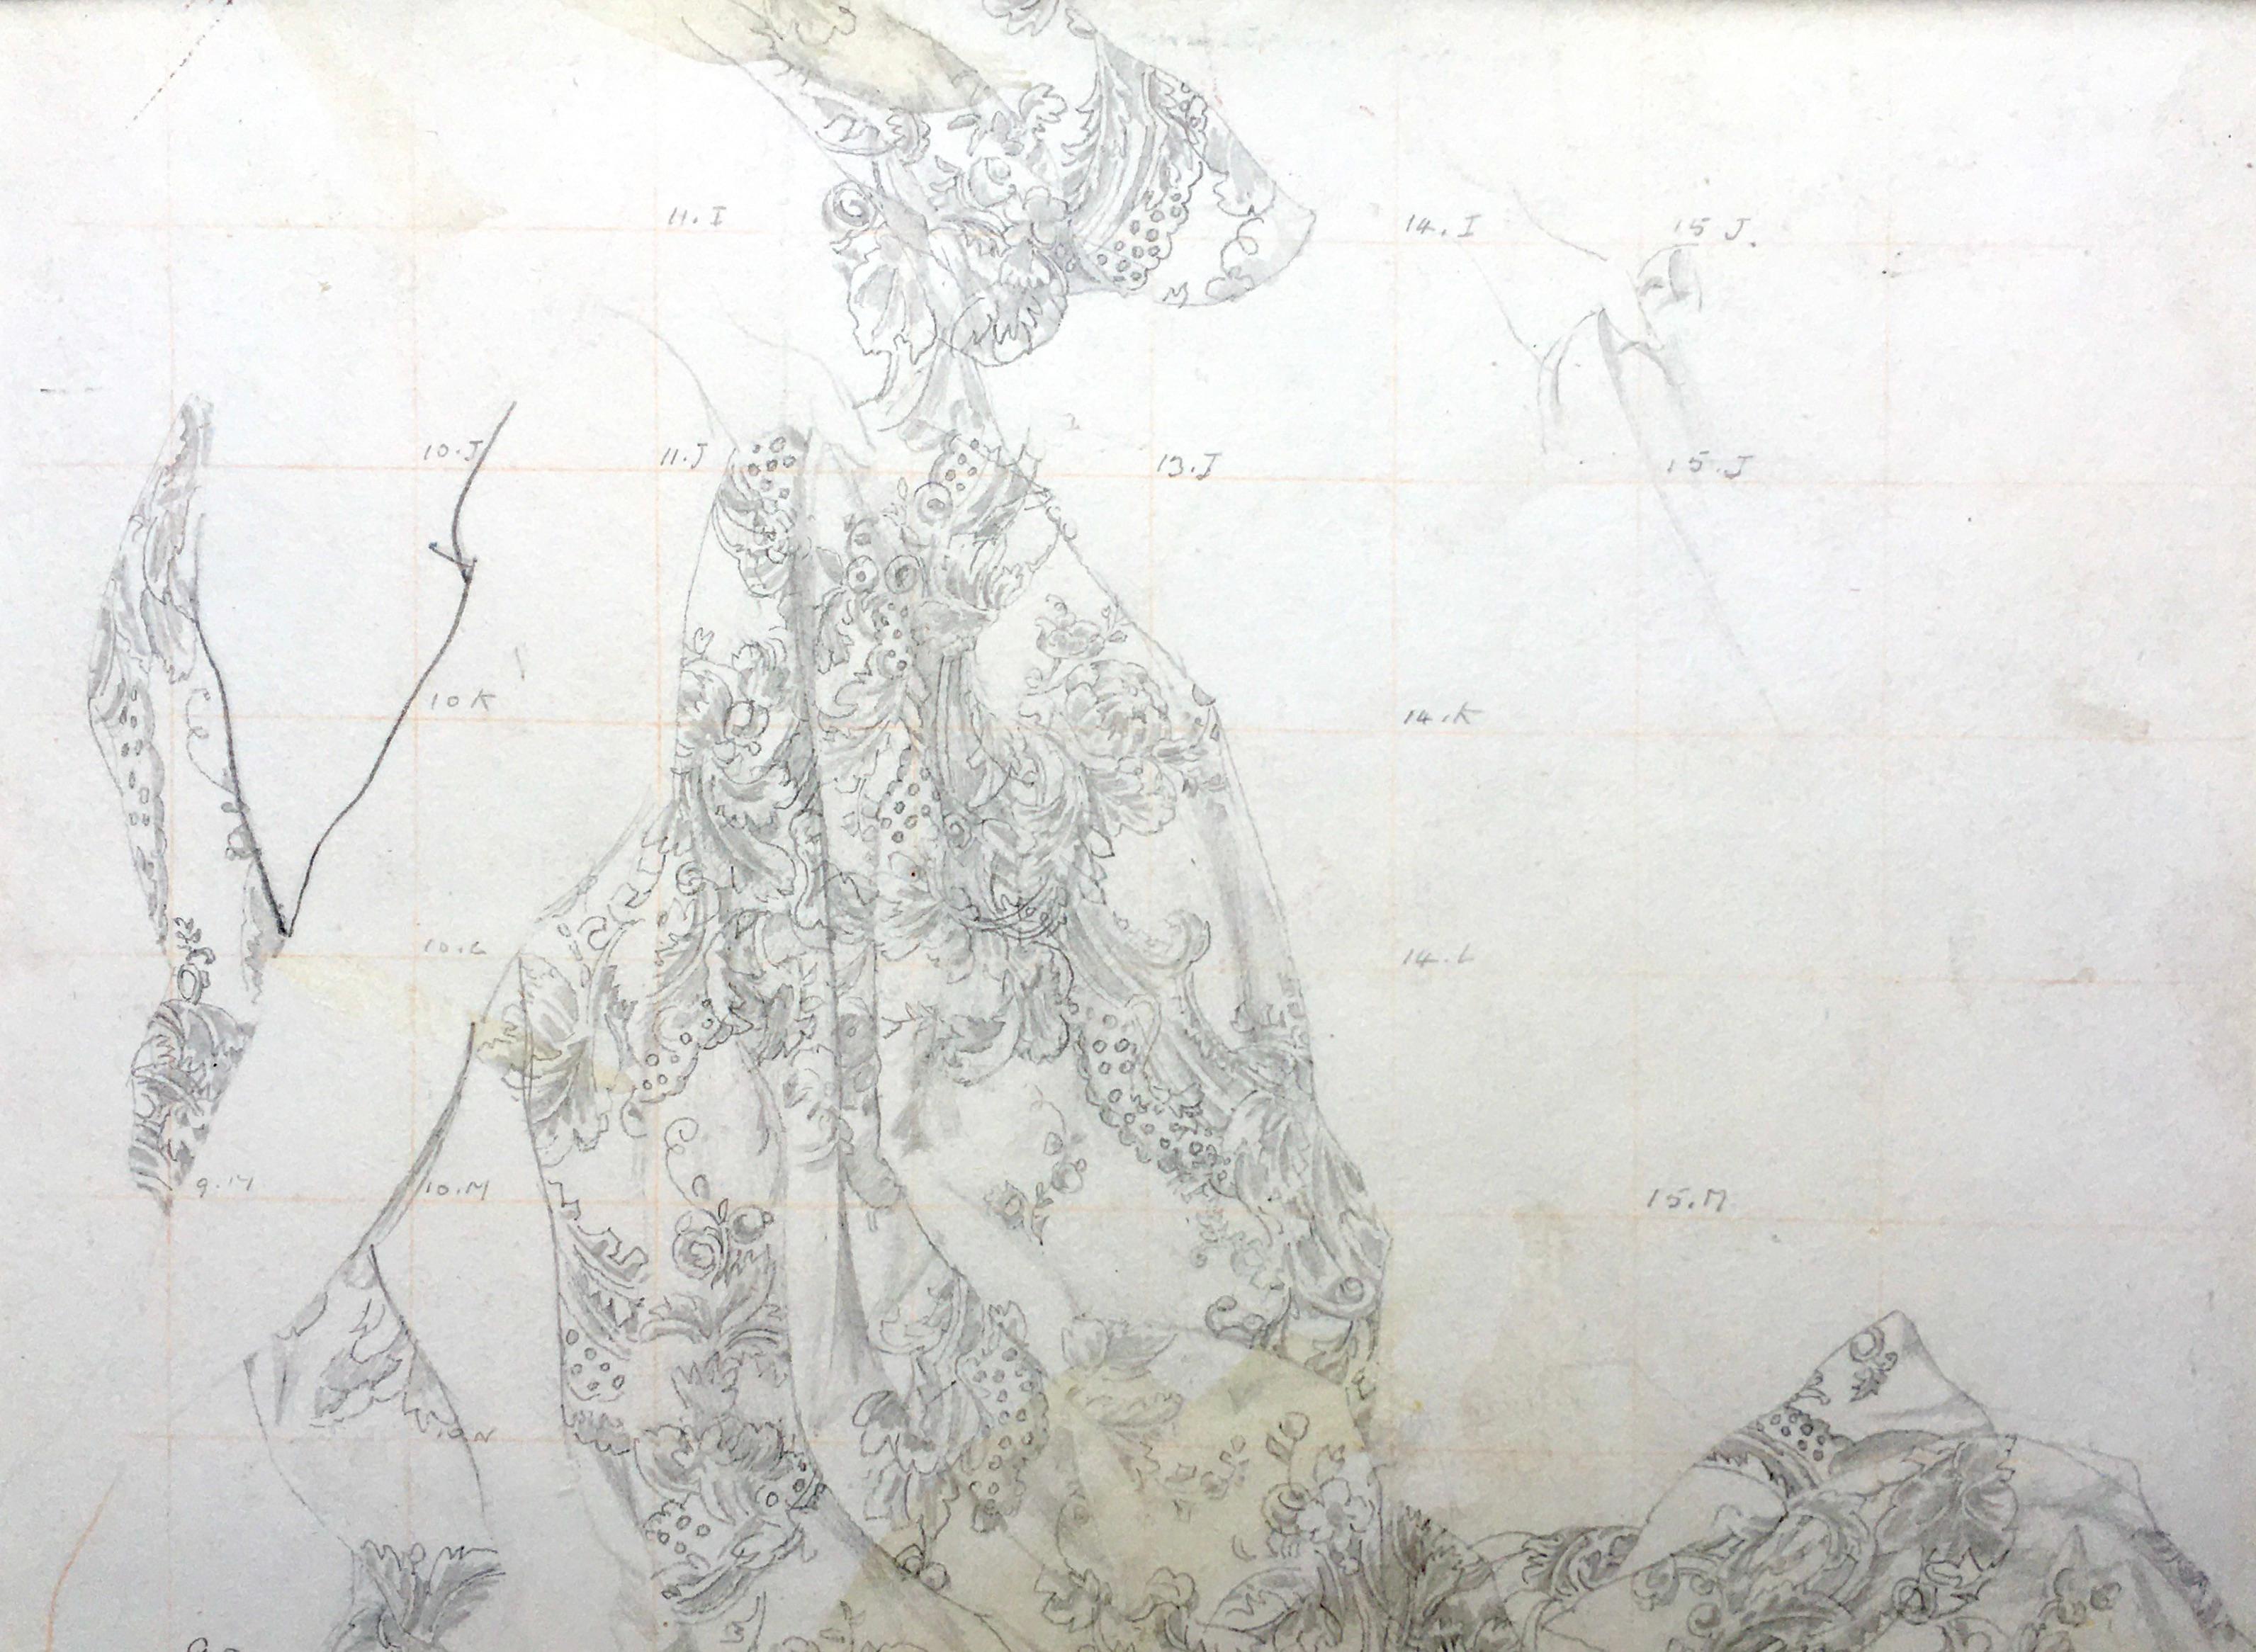 CHARLES SIMS, RA, RWS, RSW
(1873-1928)

Drapierungsstudie für das Wandbild der Royal Academy Arts & Crafts

Bleistift, quadratisch für Übertragung
Ungerahmt, in konservatorischem Passepartout

17,5 x 24 cm, 7 x 9 ½ Zoll.
(Passepartoutgröße 33,5 x 39